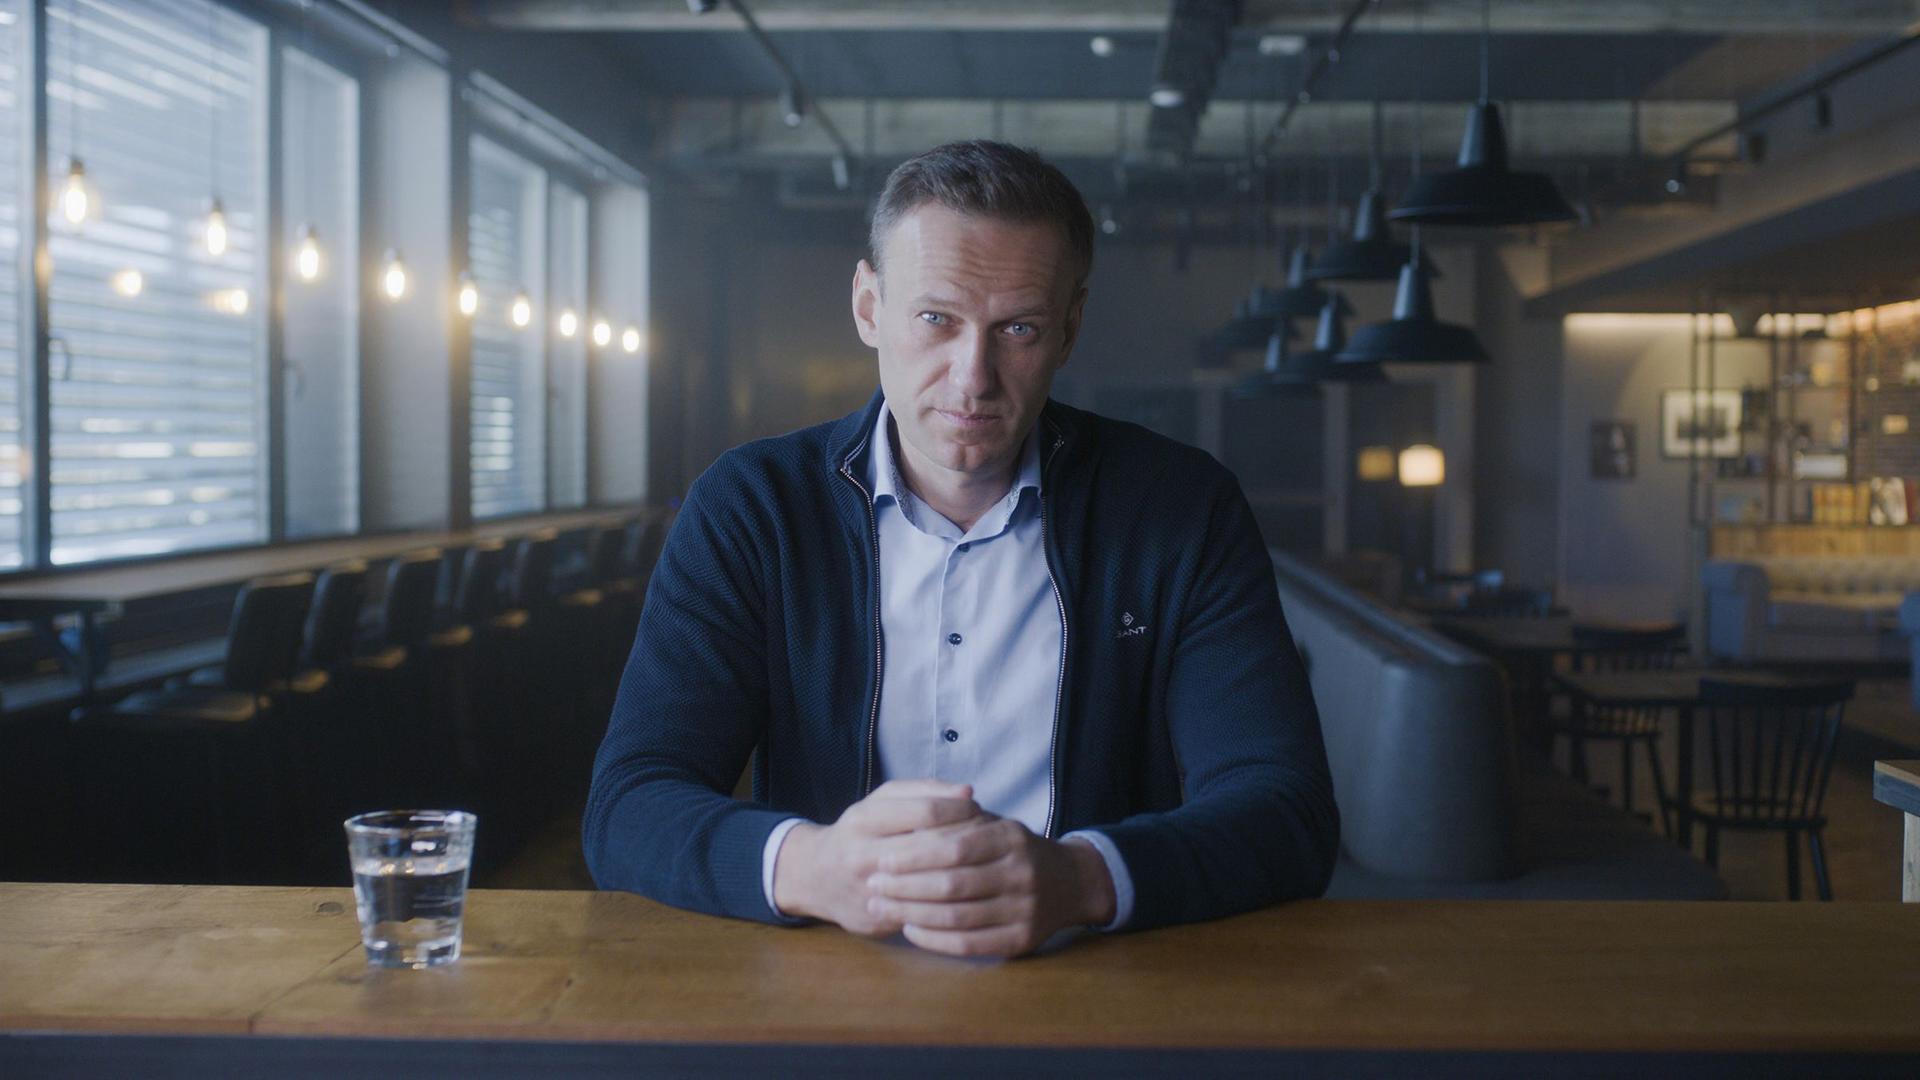 Der russische Oppositionspolitiker Alexej Nawalny bei einem Interview. Er blickt die Zuschauer direkt an.